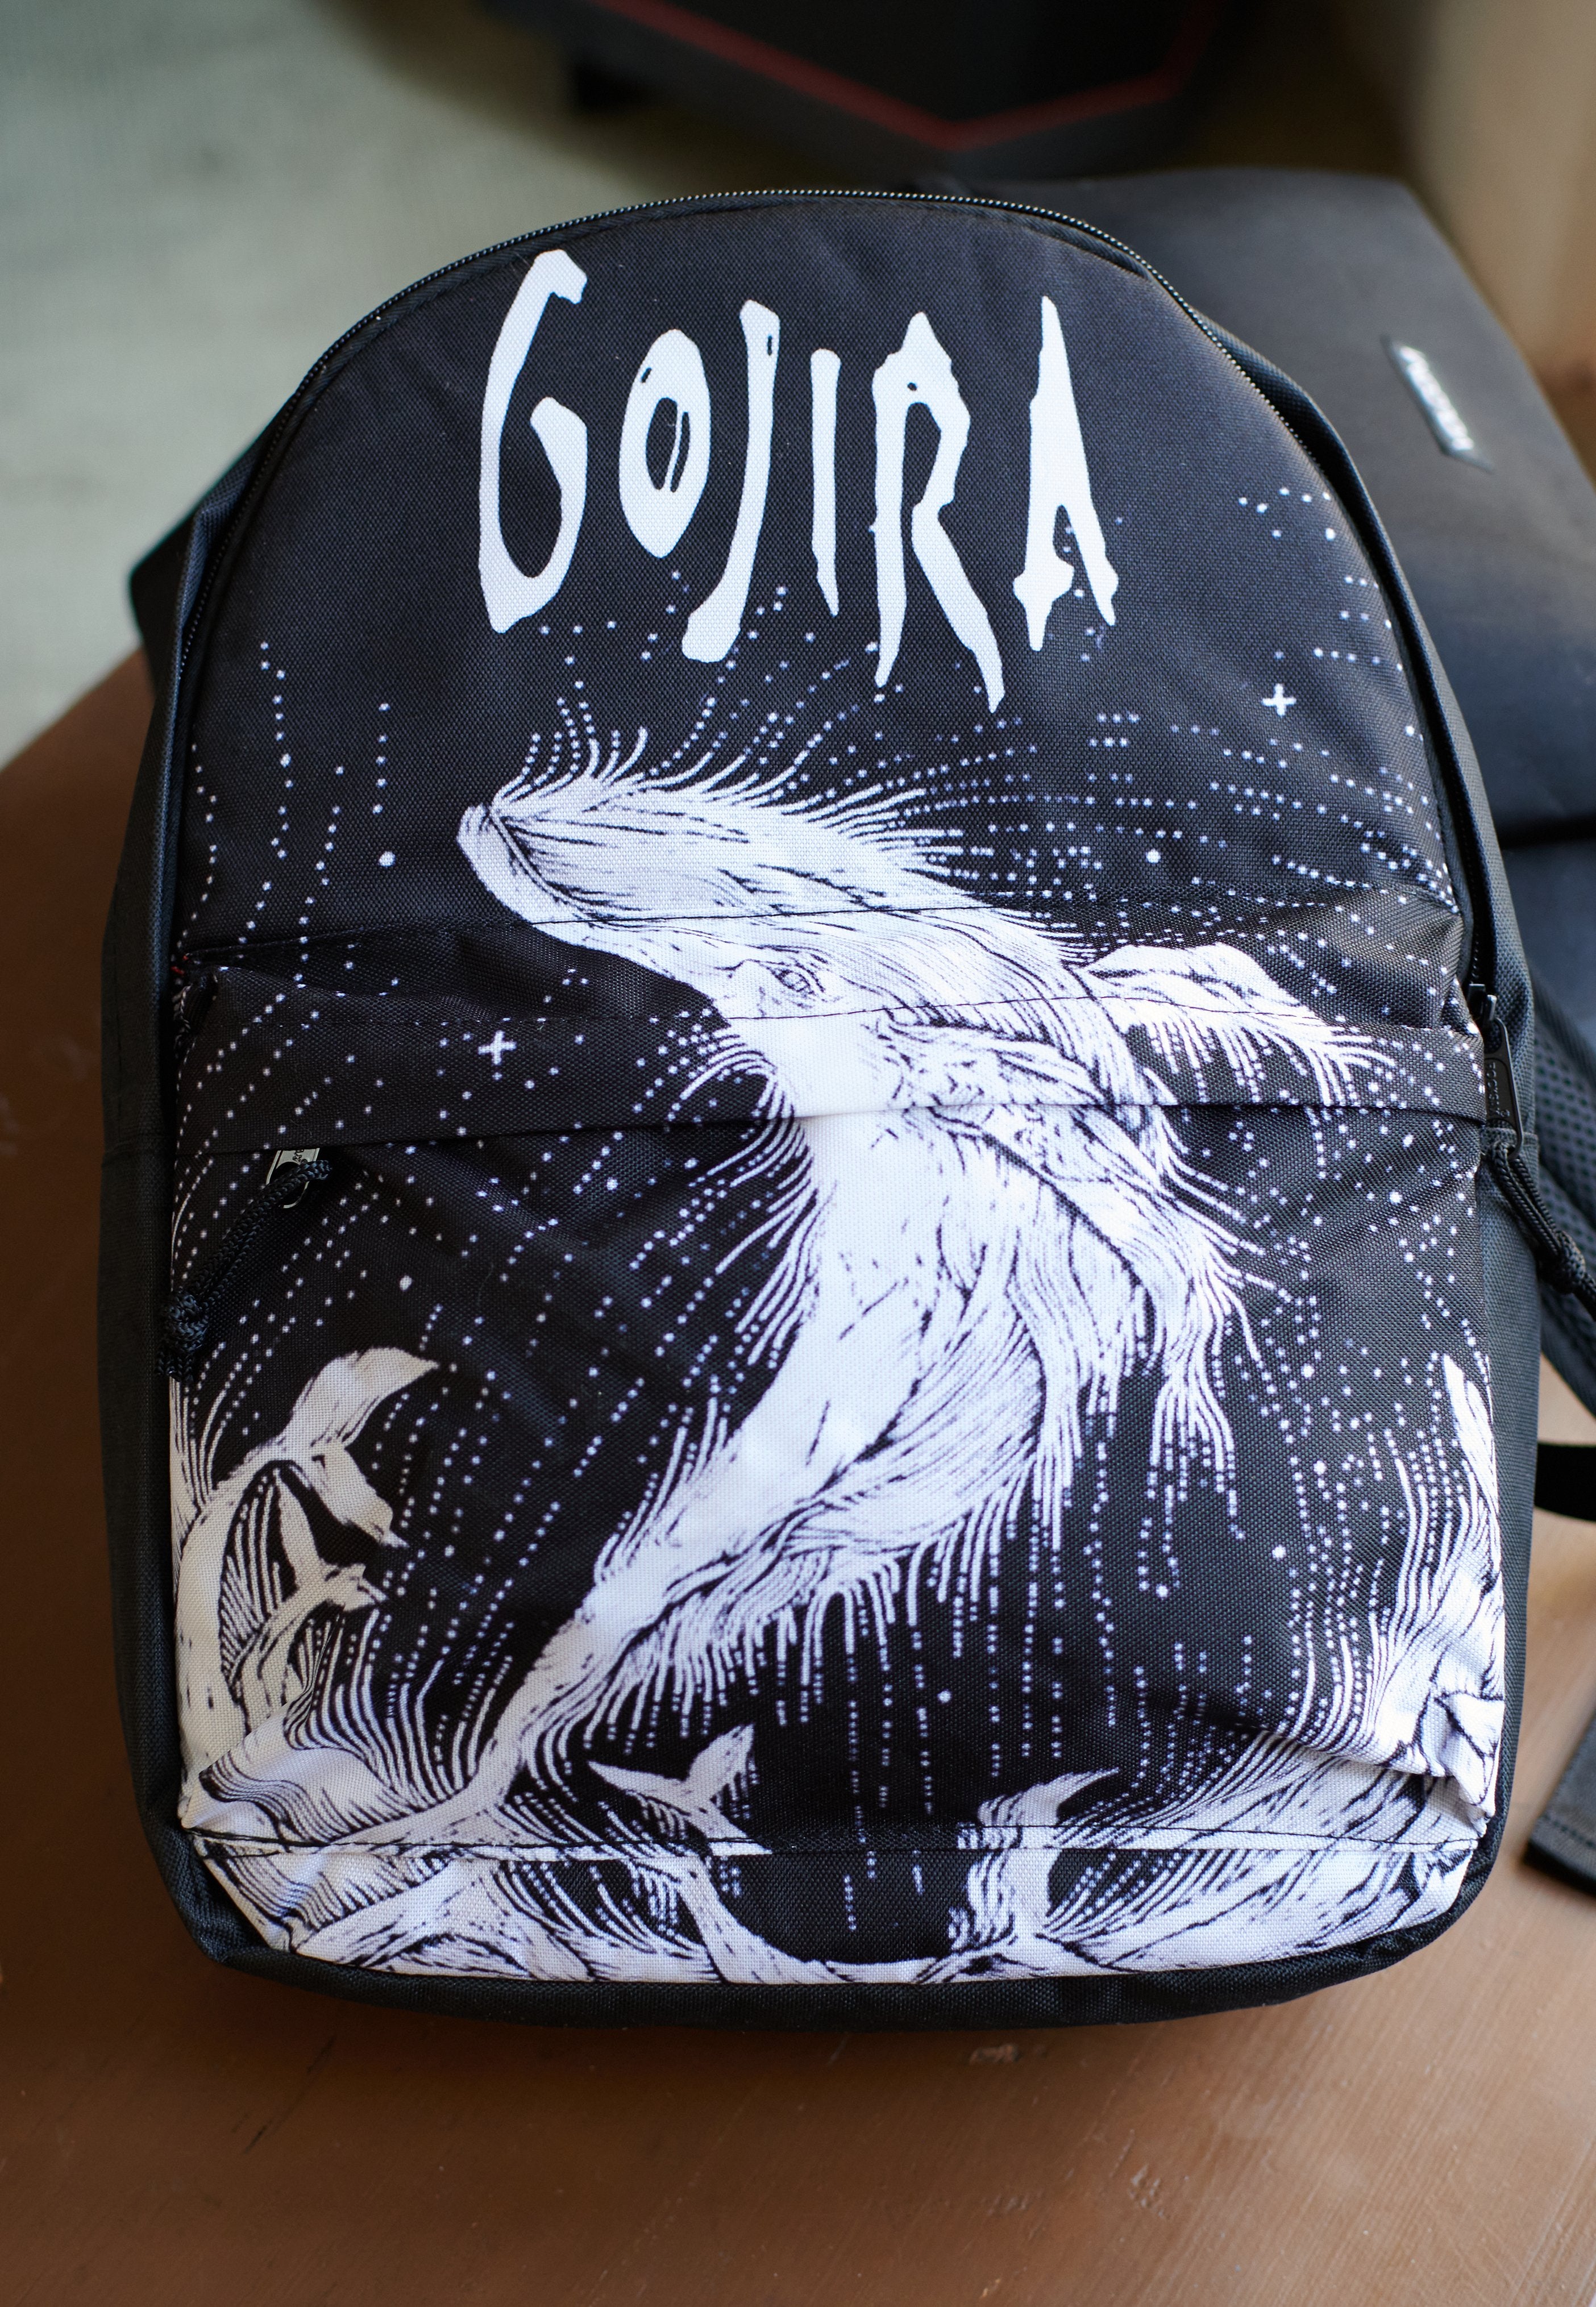 Gojira - Woodblock Whale - Backpack